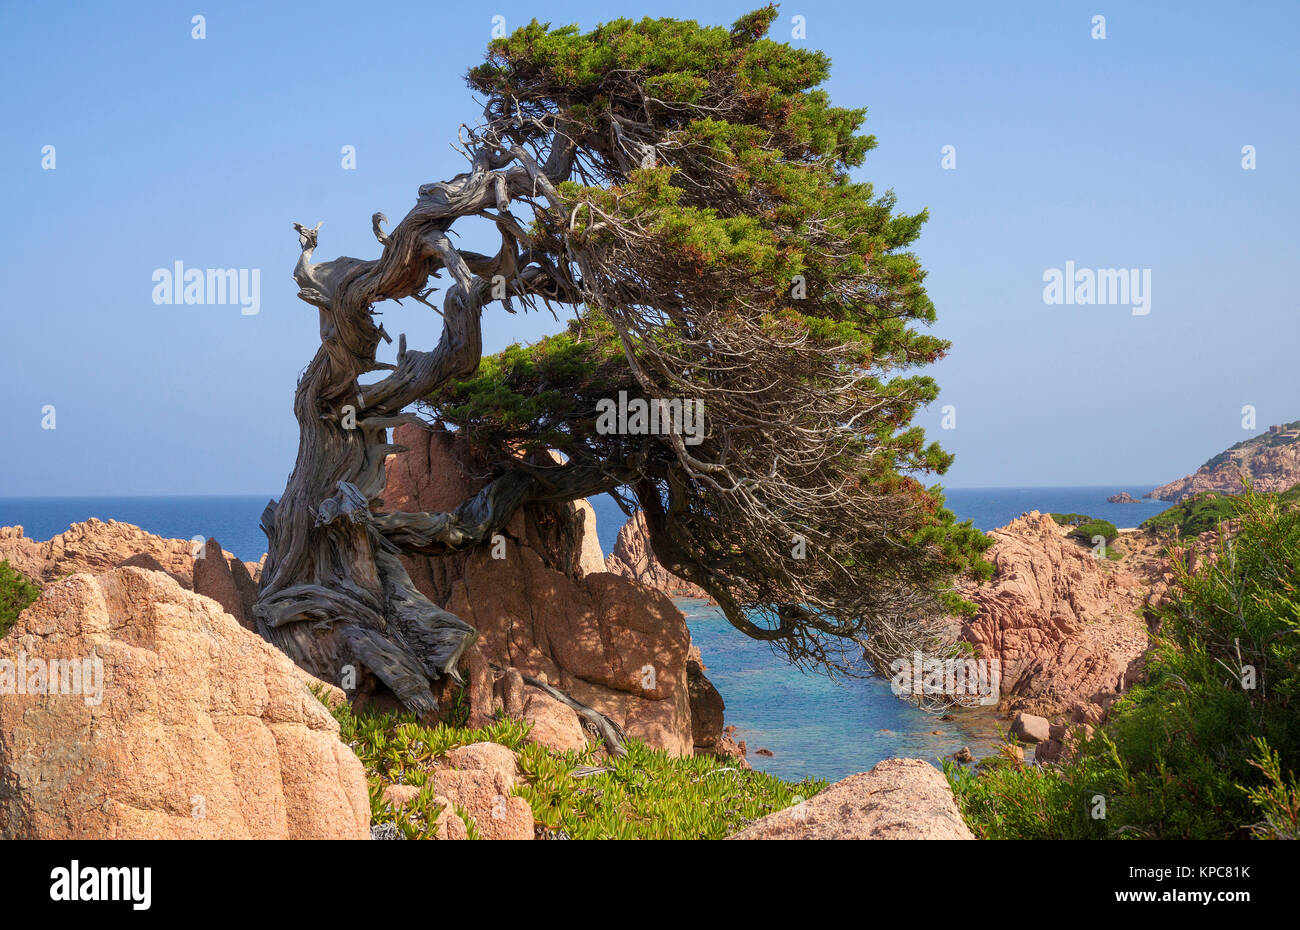 Wndswept tree at the rocky coast of Costa Paradiso, Porphyry rocks, Sardinia, Italy, Mediterranean  sea, Europe Stock Photo